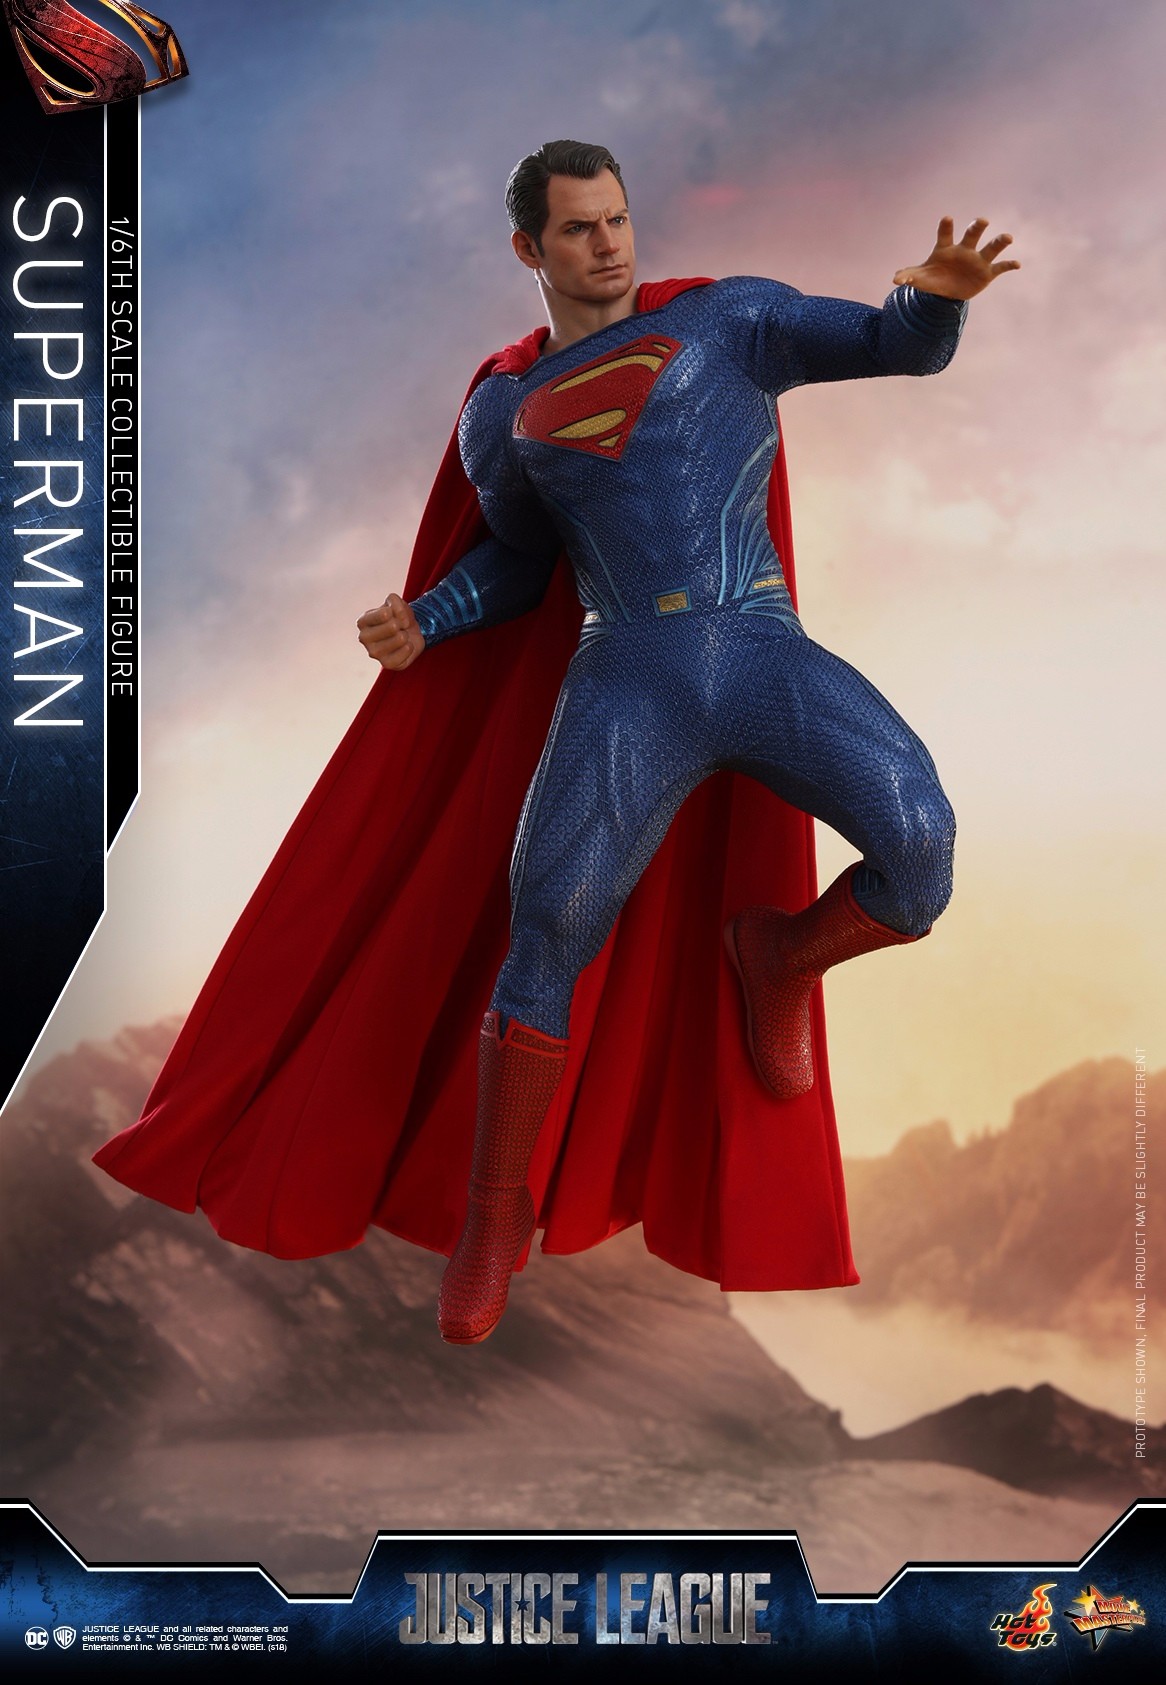 新品预定 hottoys 1/6 mms465 正义联盟 超人superman